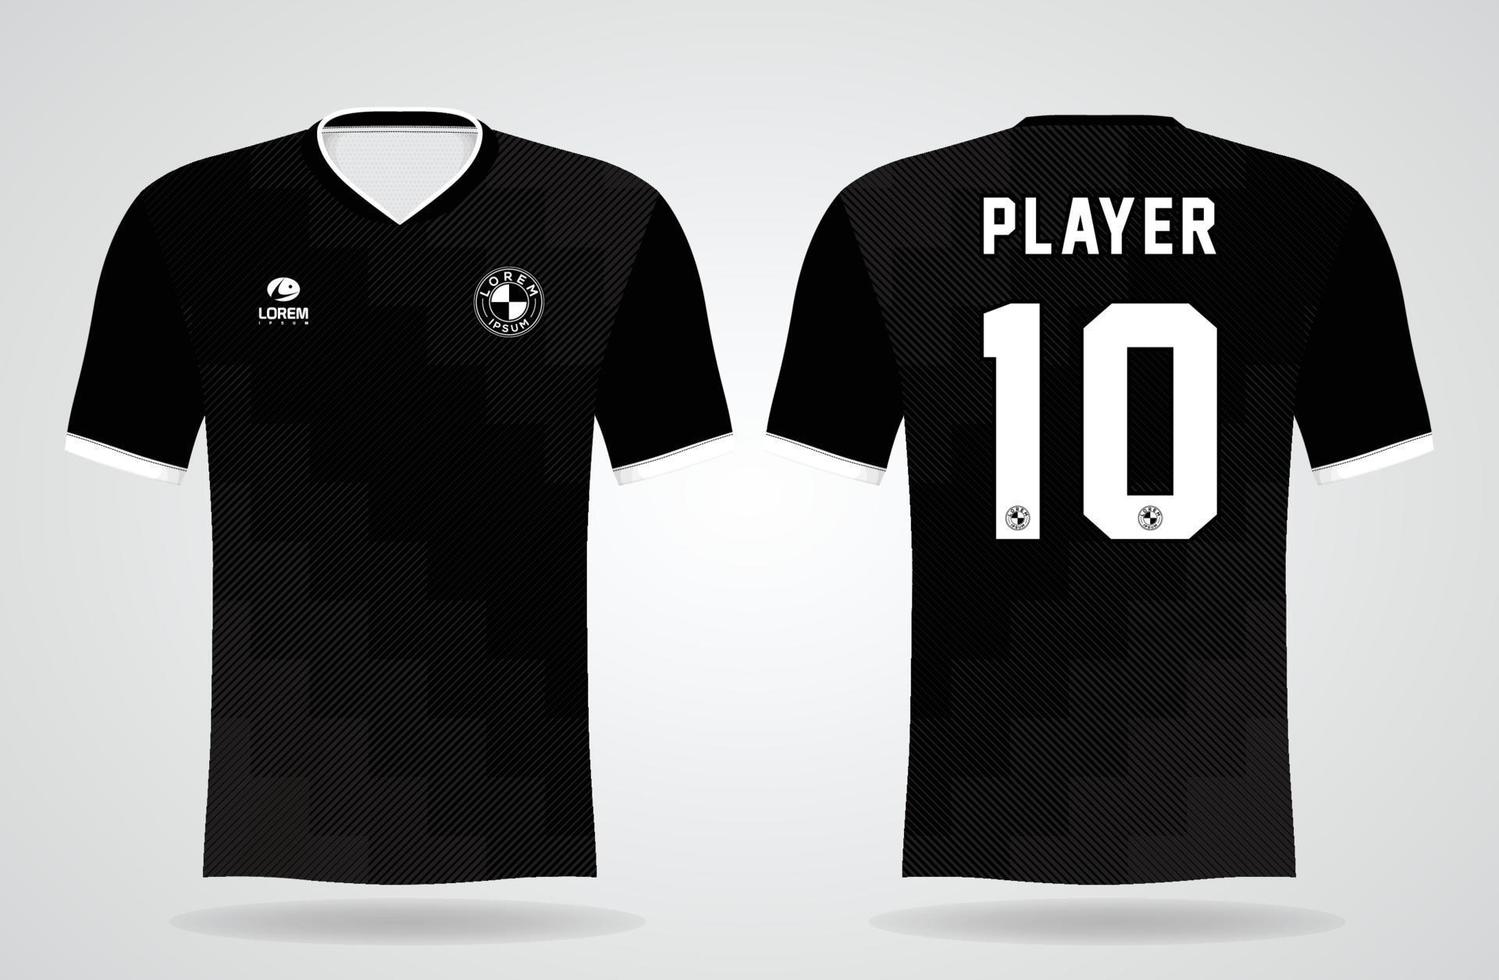 svart sport jersey mall för laguniformer och fotboll t-shirt design vektor